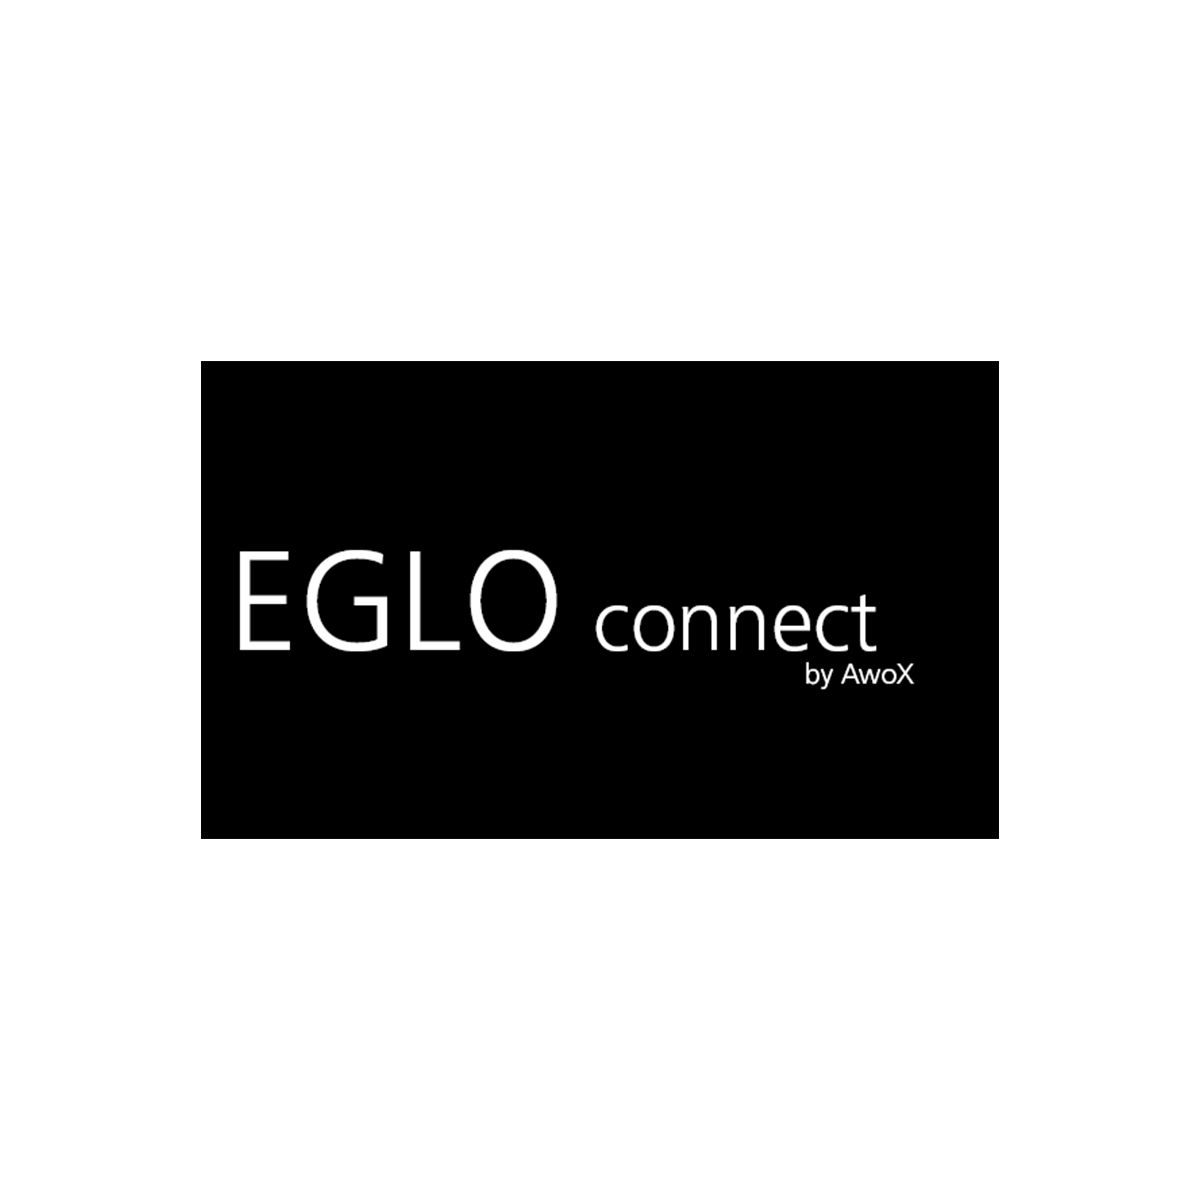 EGLO connect